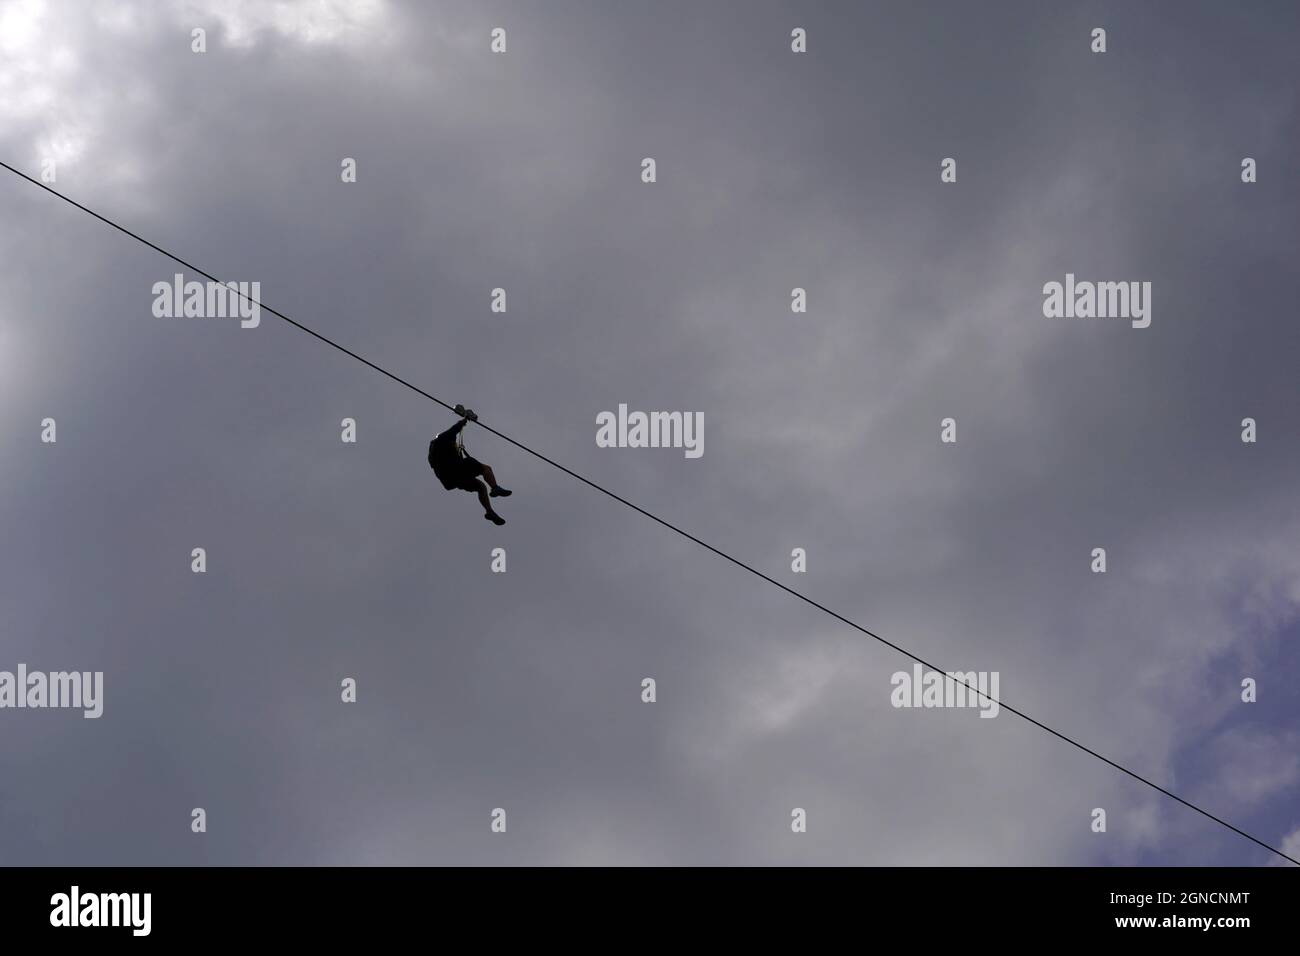 Seilrutsche oder Abseilen mit einem Mann in Silhouette. Auf dem Hintergrund befindet sich ein wolkiger Himmel sowie ein Kopierbereich. Stockfoto